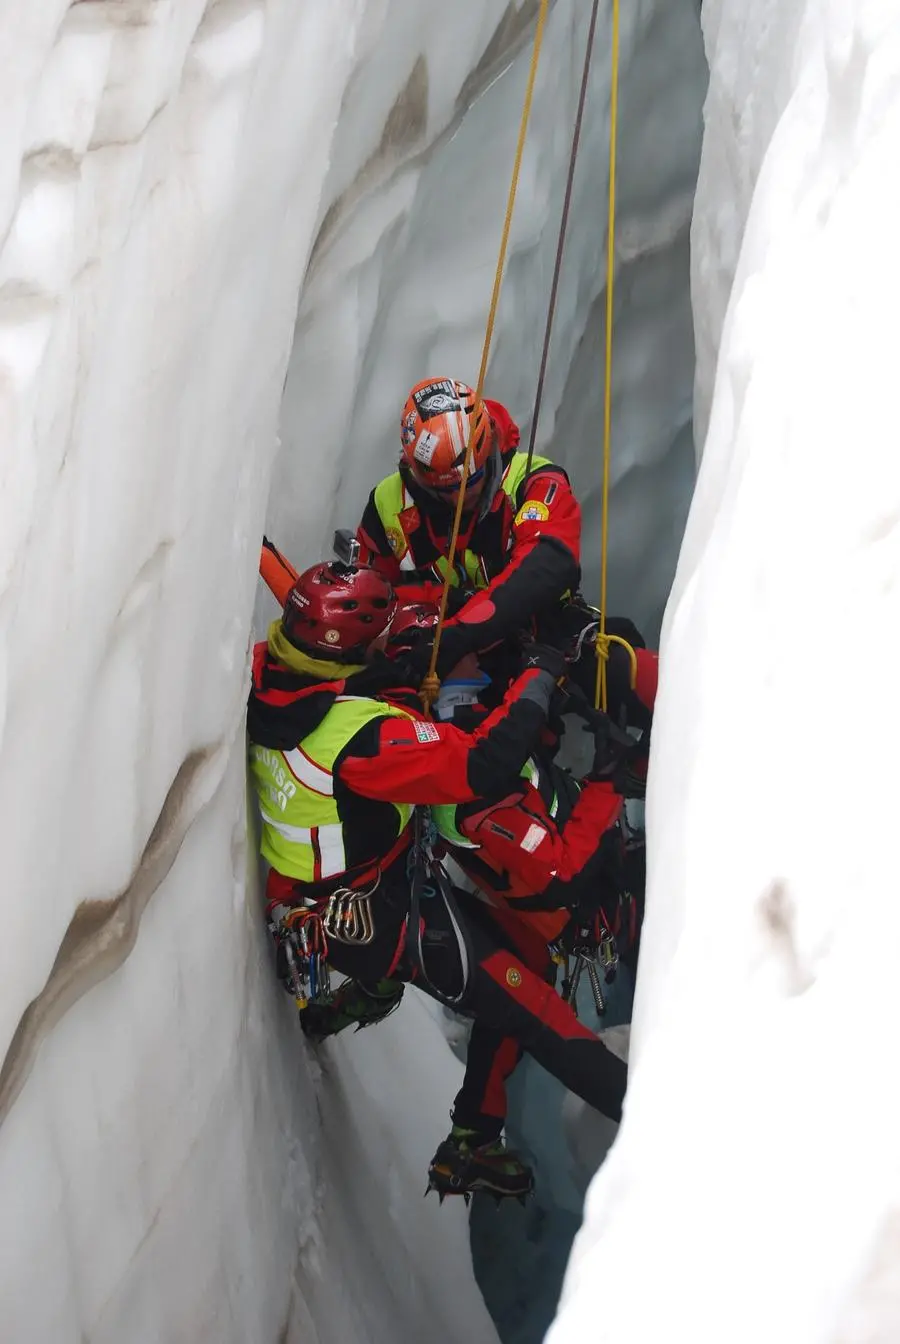 La formazione con il Modulo ghiaccio per i nuovi Tecnici di soccorso alpino